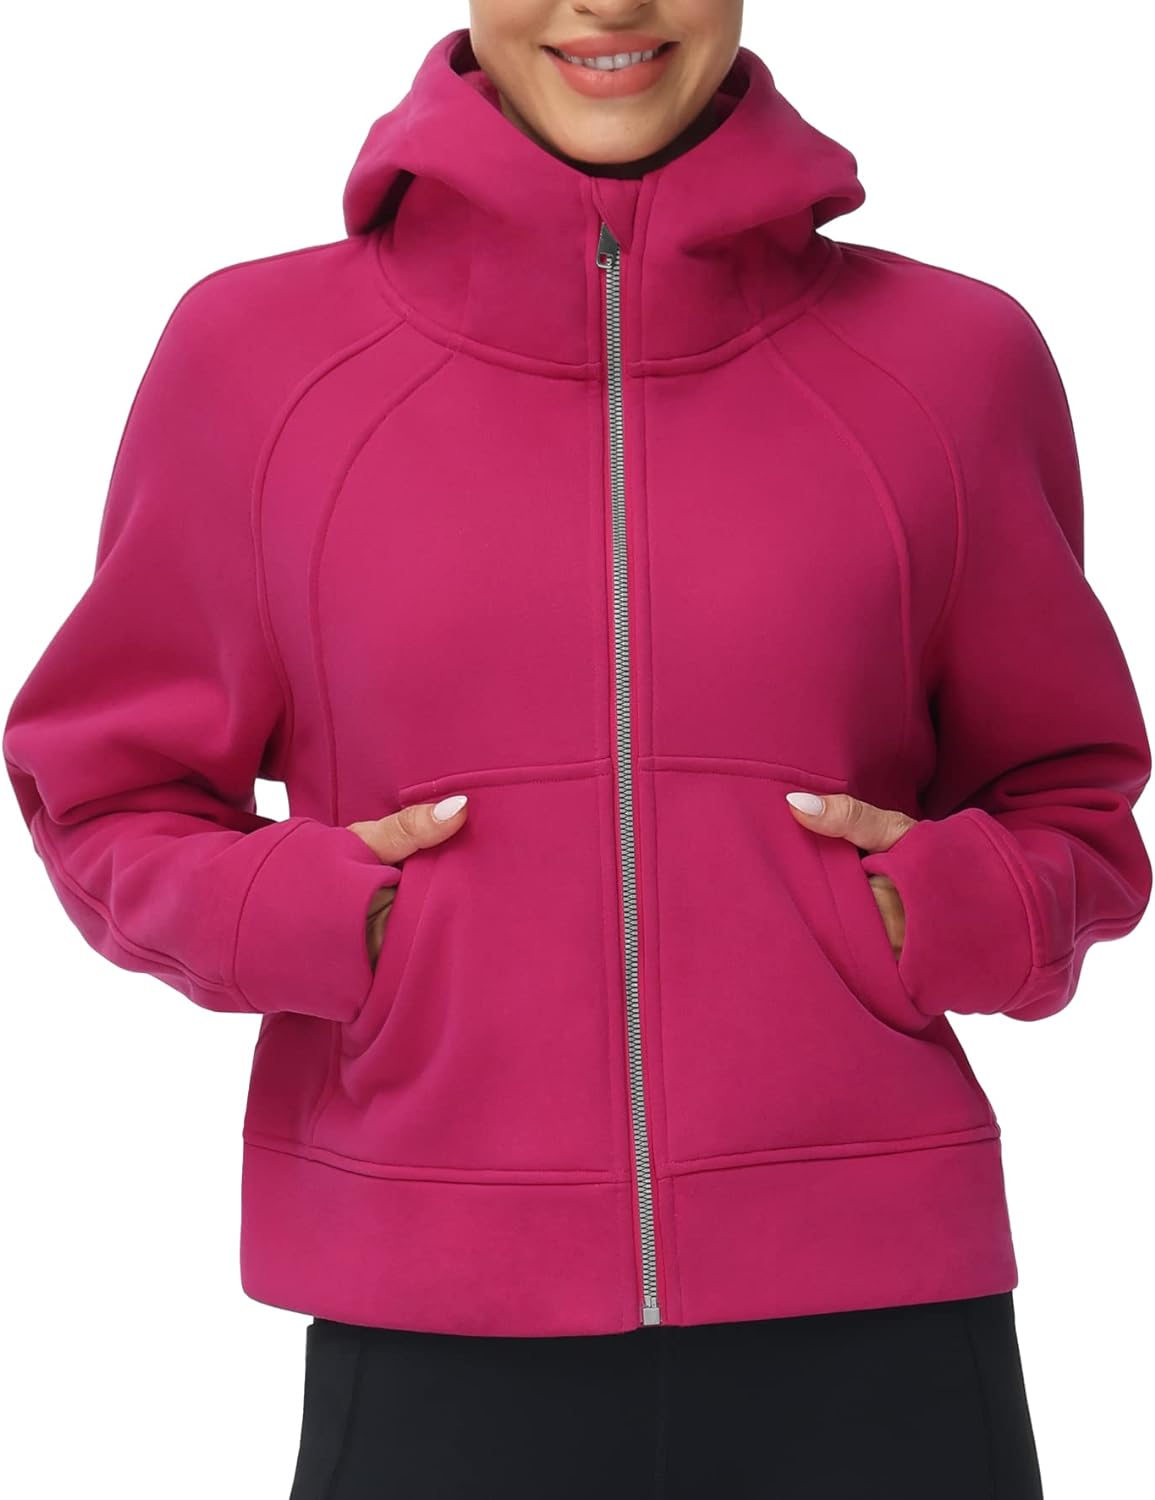 THE GYM PEOPLE Women's Full-Zip Up Hoodies Jacket Fleece Workout Crop Tops  Sweat